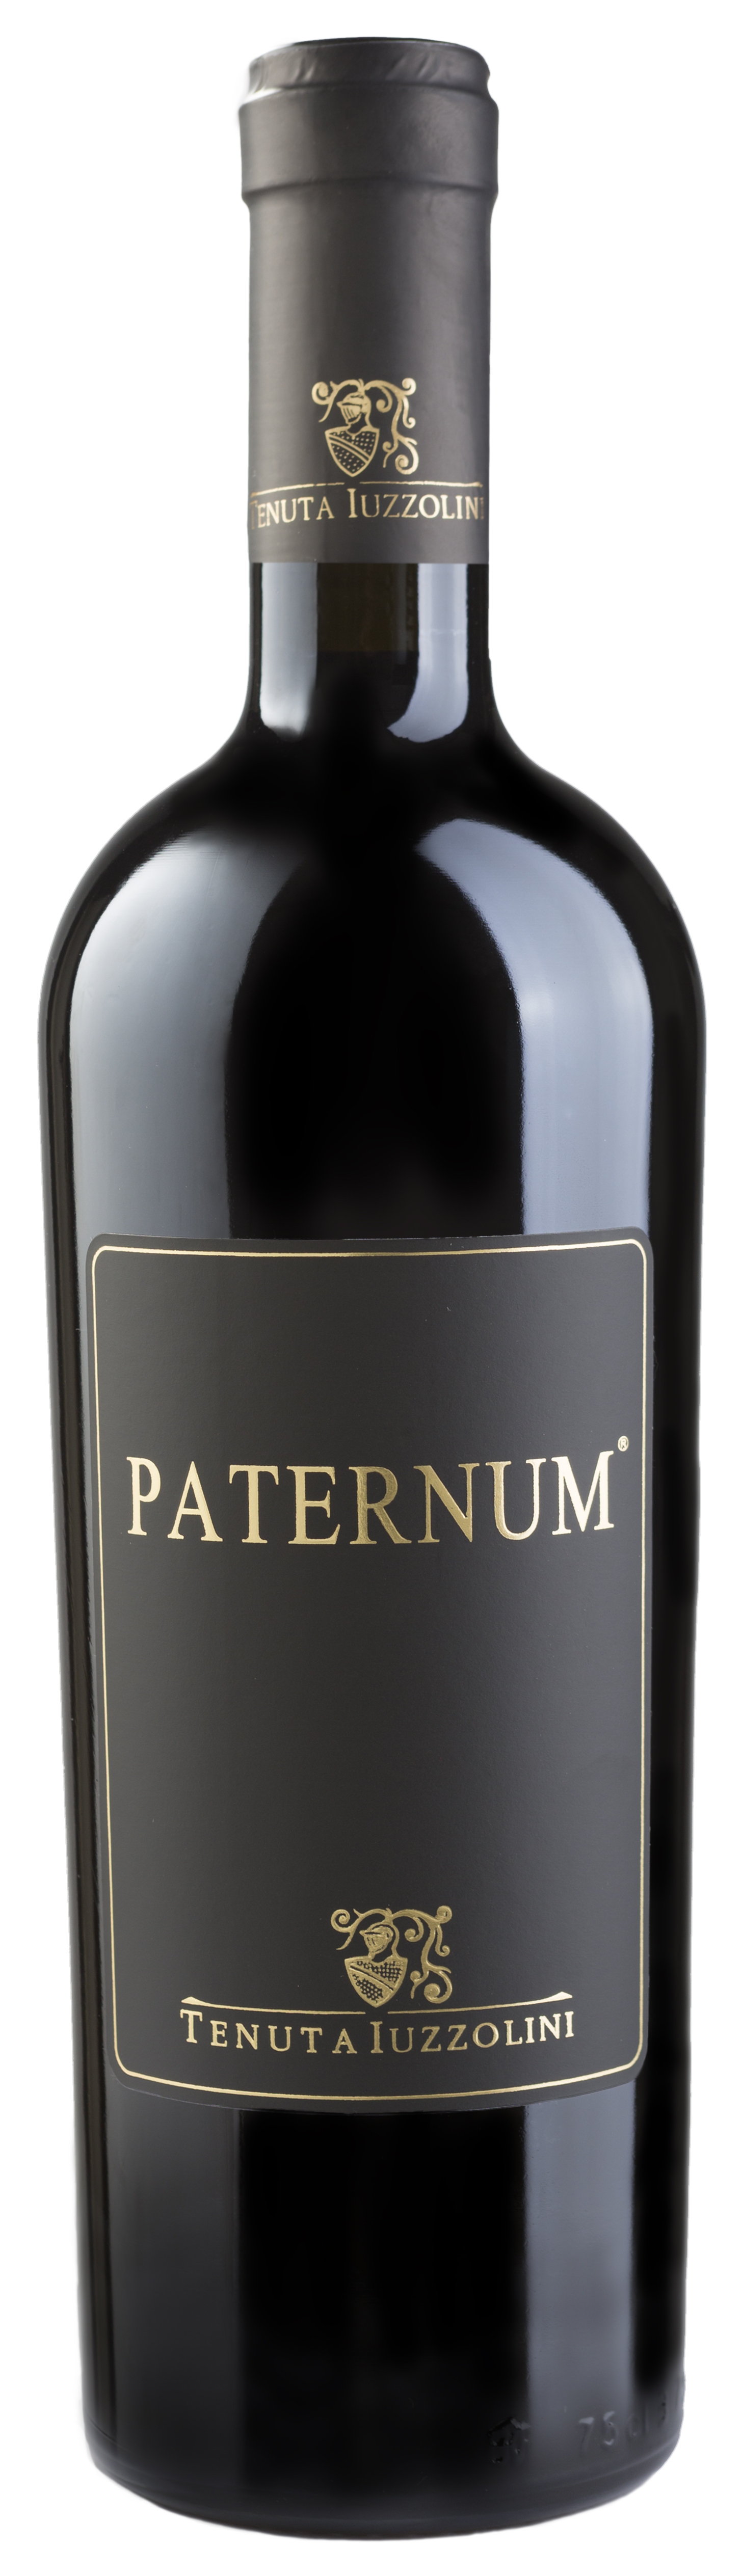 2015 Paternum Riserva 0.75l